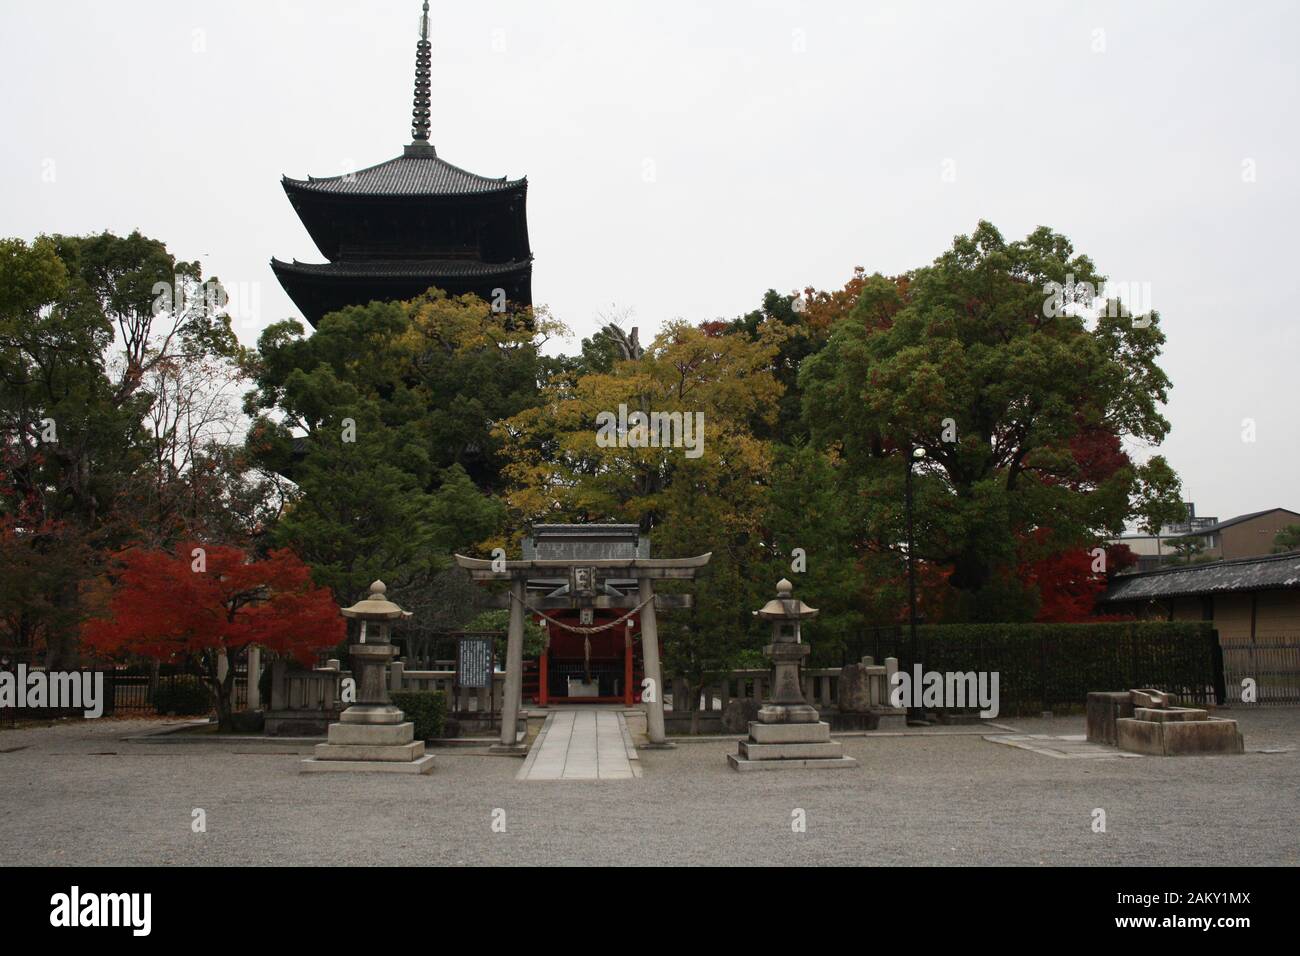 Sanctuaire japonais avec la pagode du temple Toji au loin, Kyoto, Japon. Banque D'Images